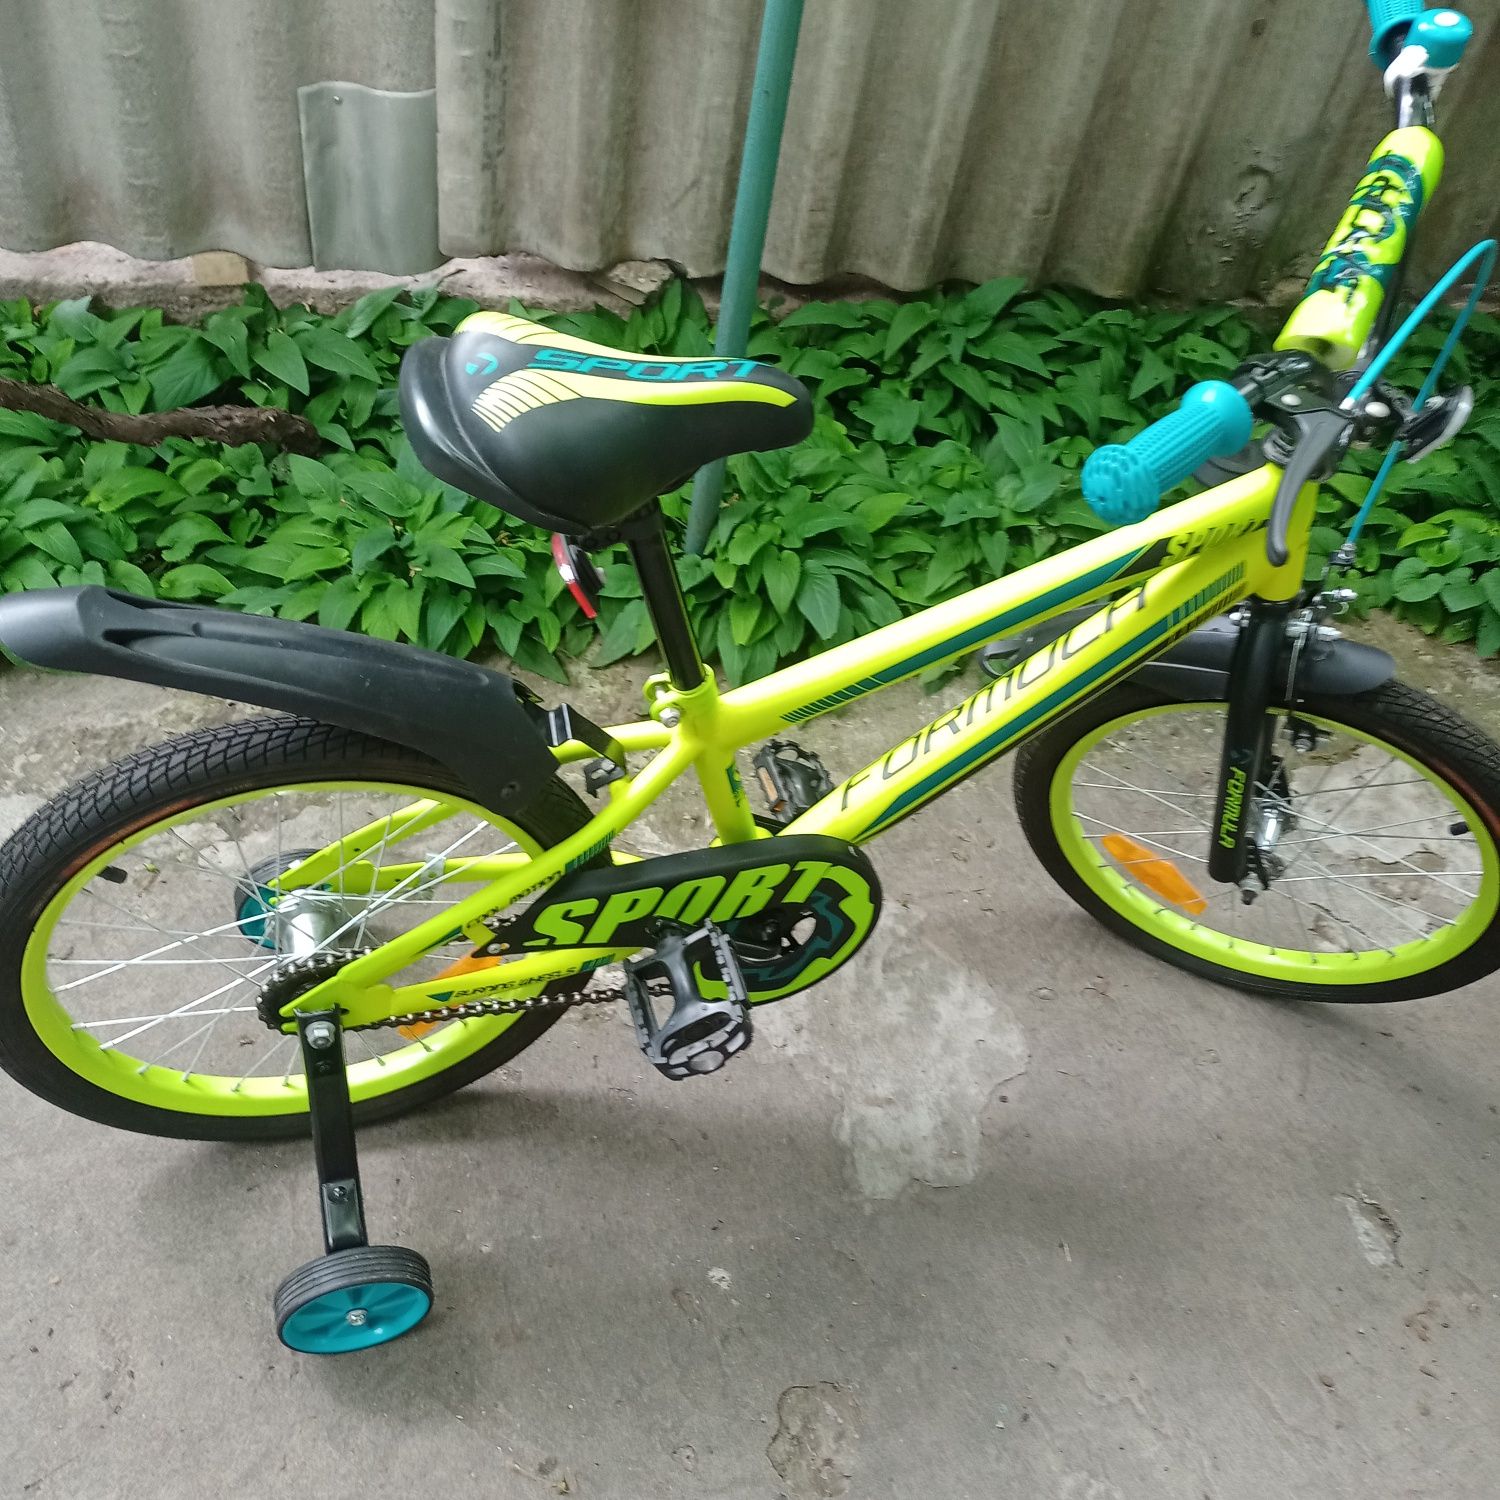 Продаётся детский велосипед